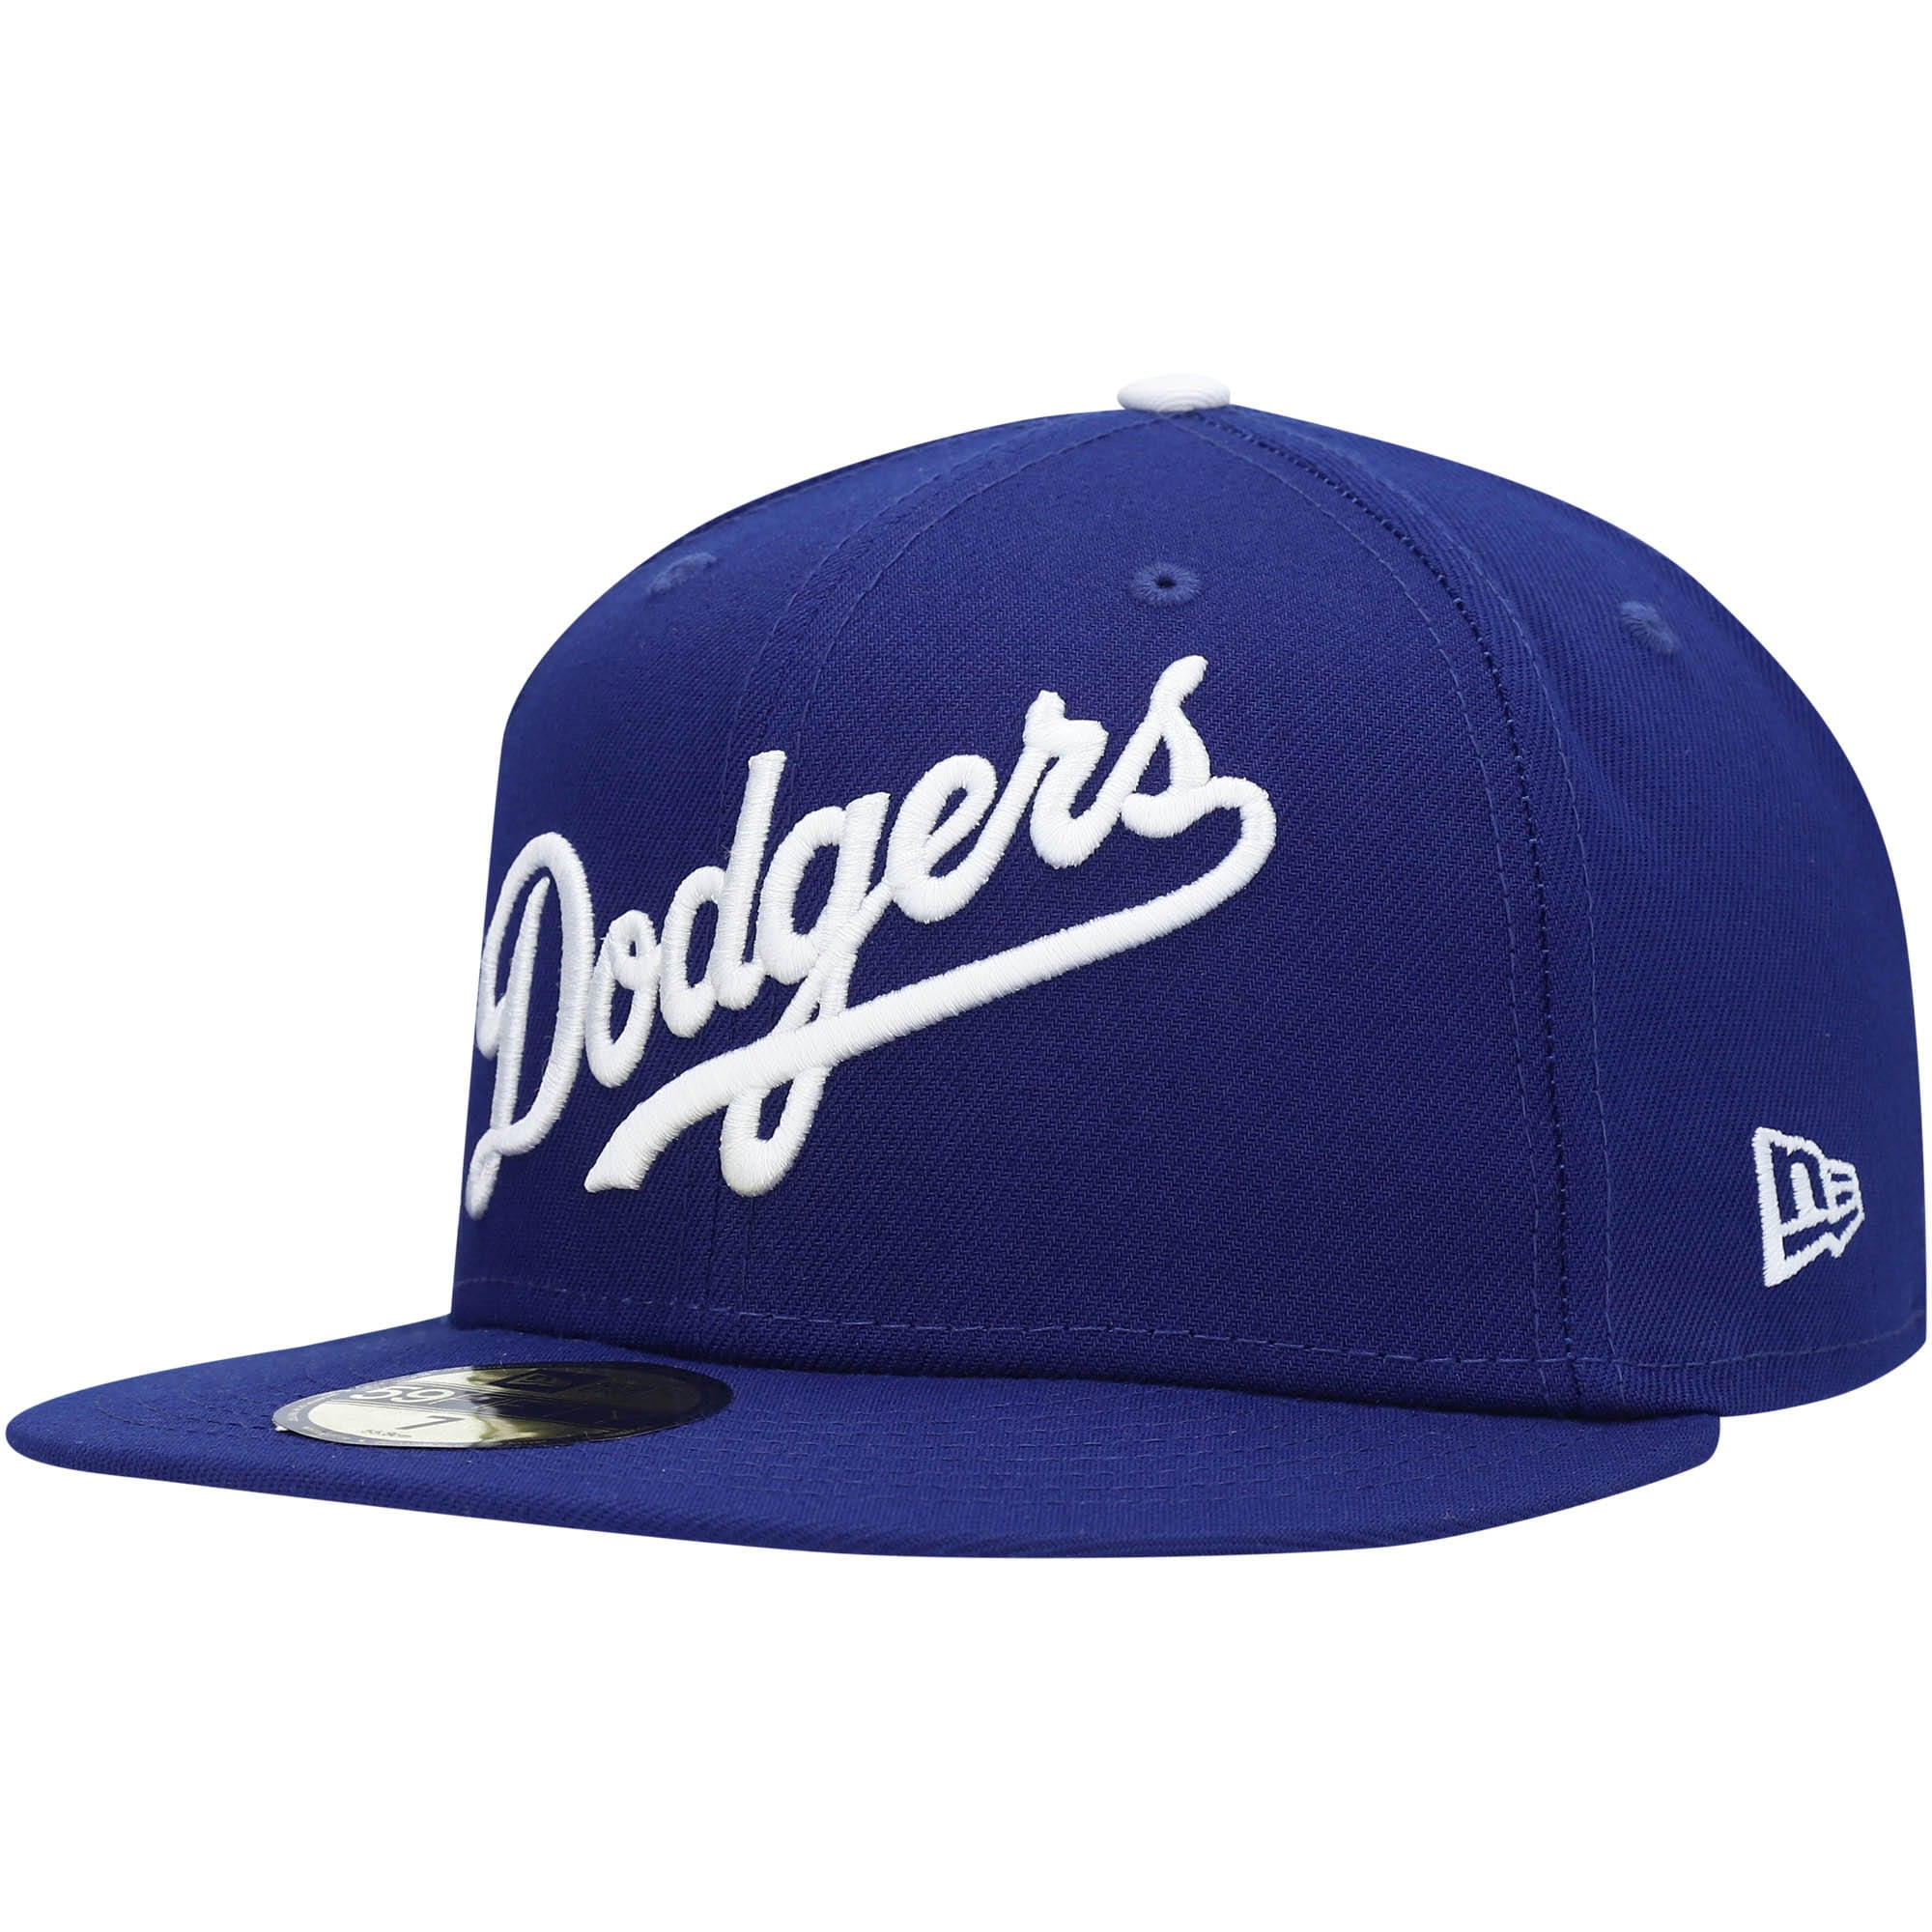 new era dodgers hat